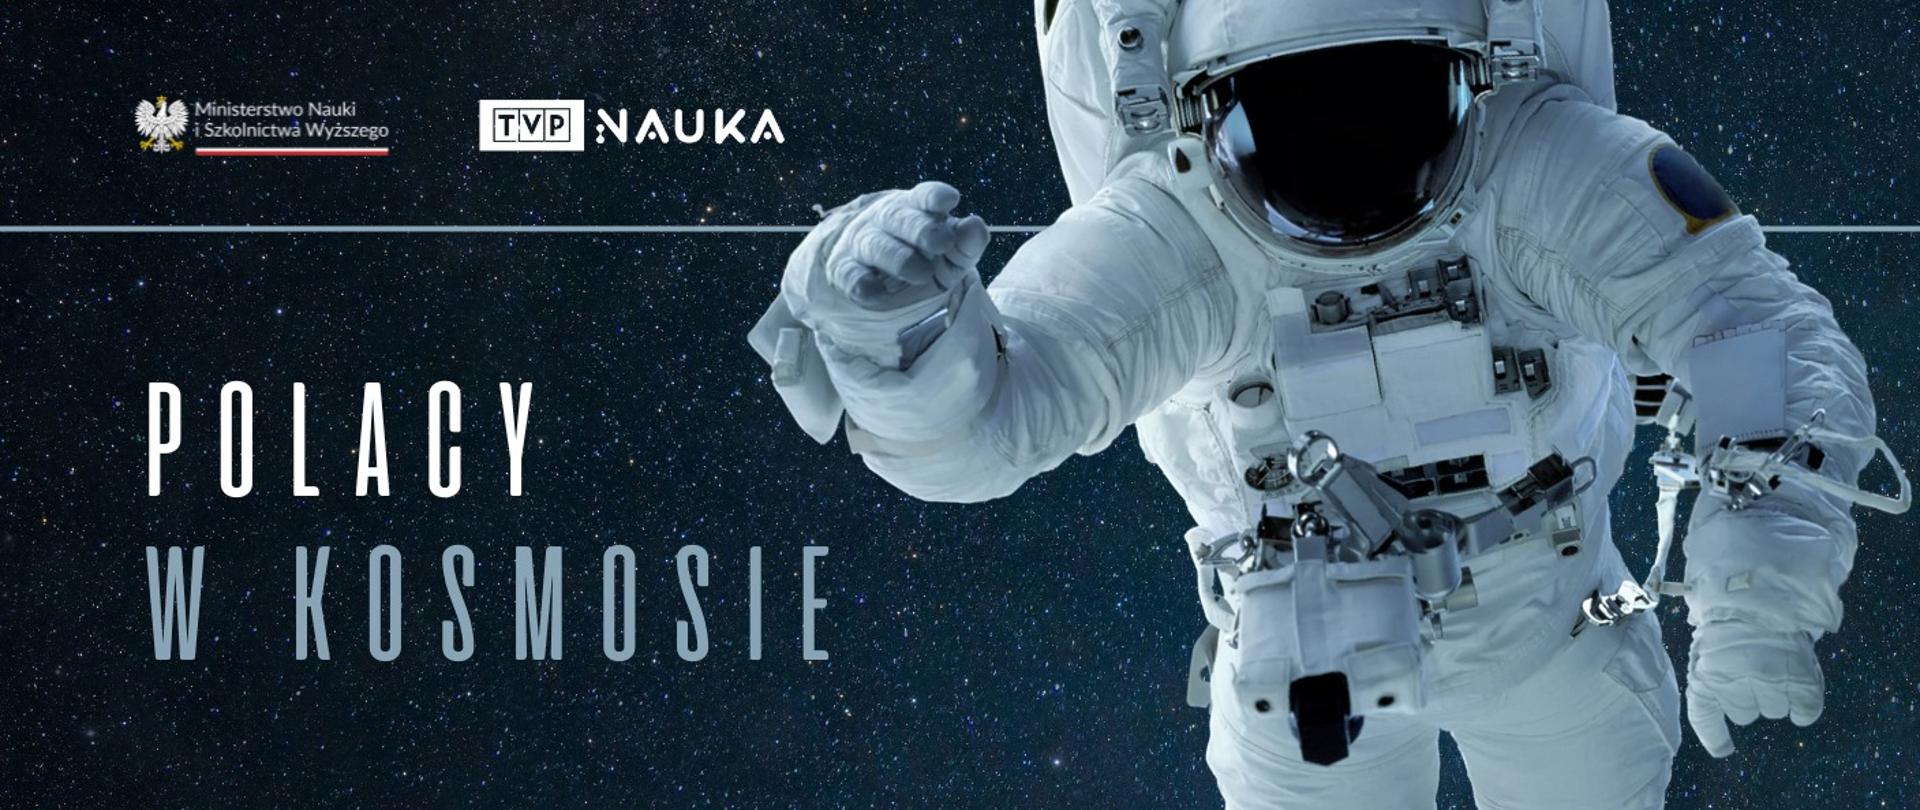 Zdjęcie astronauty na tle nieba, obok napis Polacy w kosmosie - TVP Nauka.